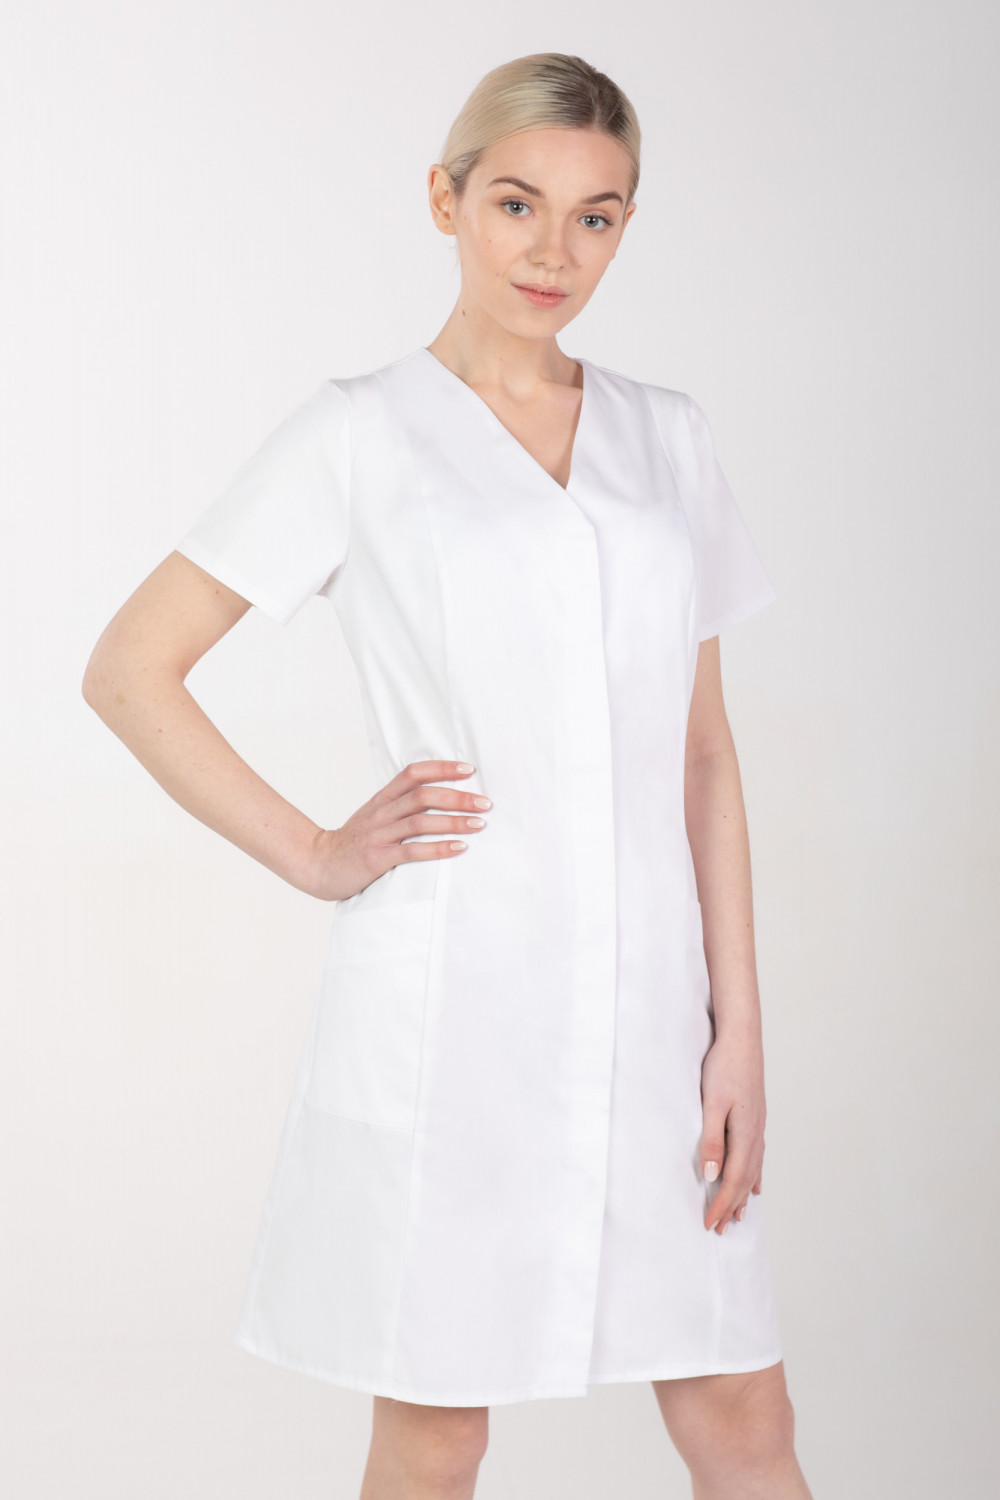 Żakiet medyczny damski M-377 kryte napy, kolor biały